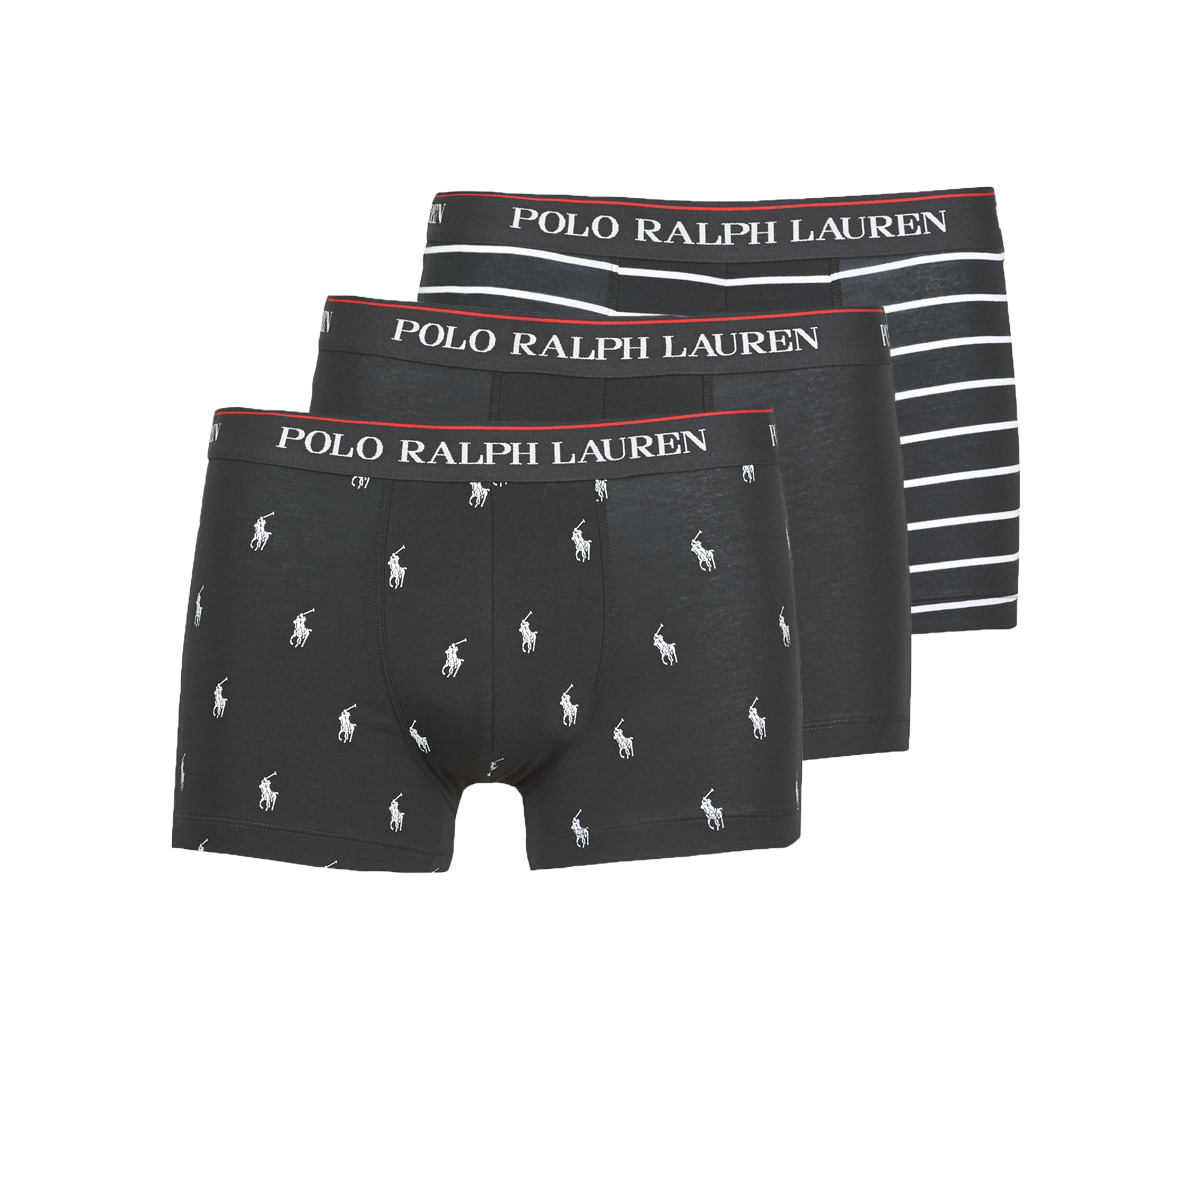 Sous-vêtements Homme Polo Ralph Lauren Bilton Touch Fastening Trainers Infants CLASSIC TRUNK X3 Noir / Blanc